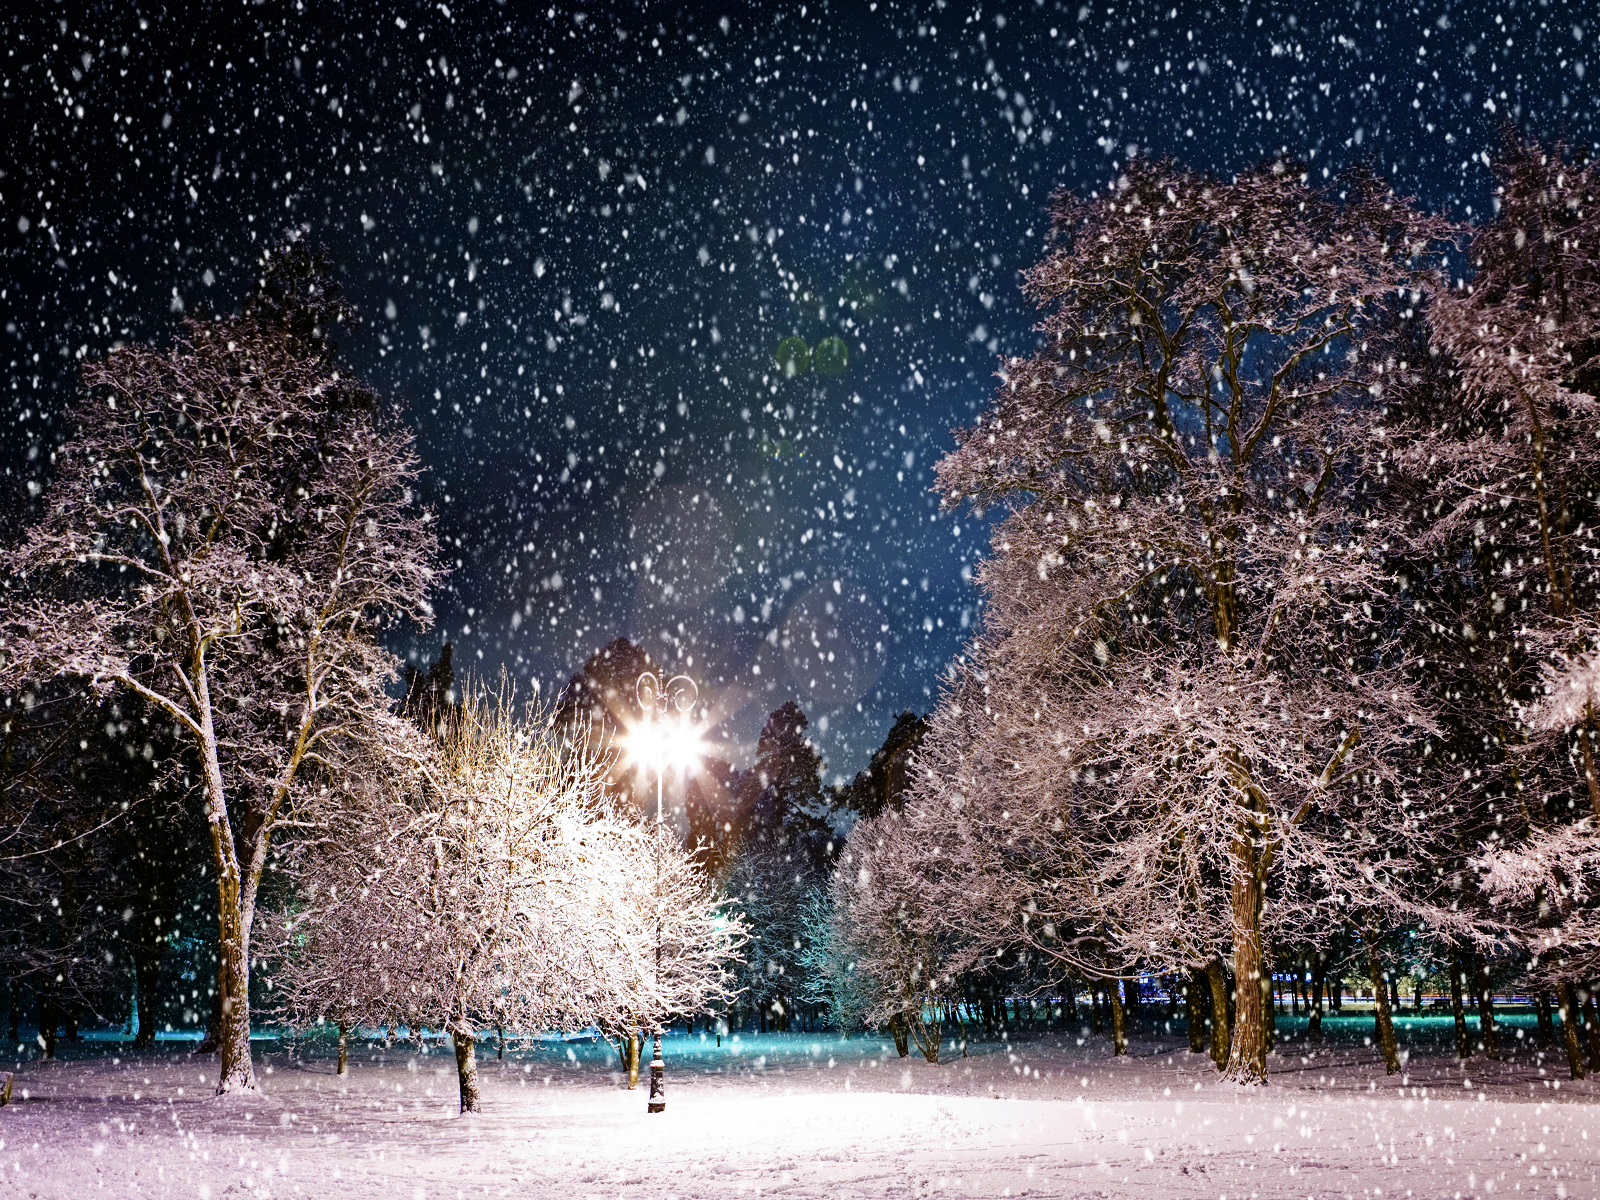 45] Snowy Winter Night Scenes Wallpaper on